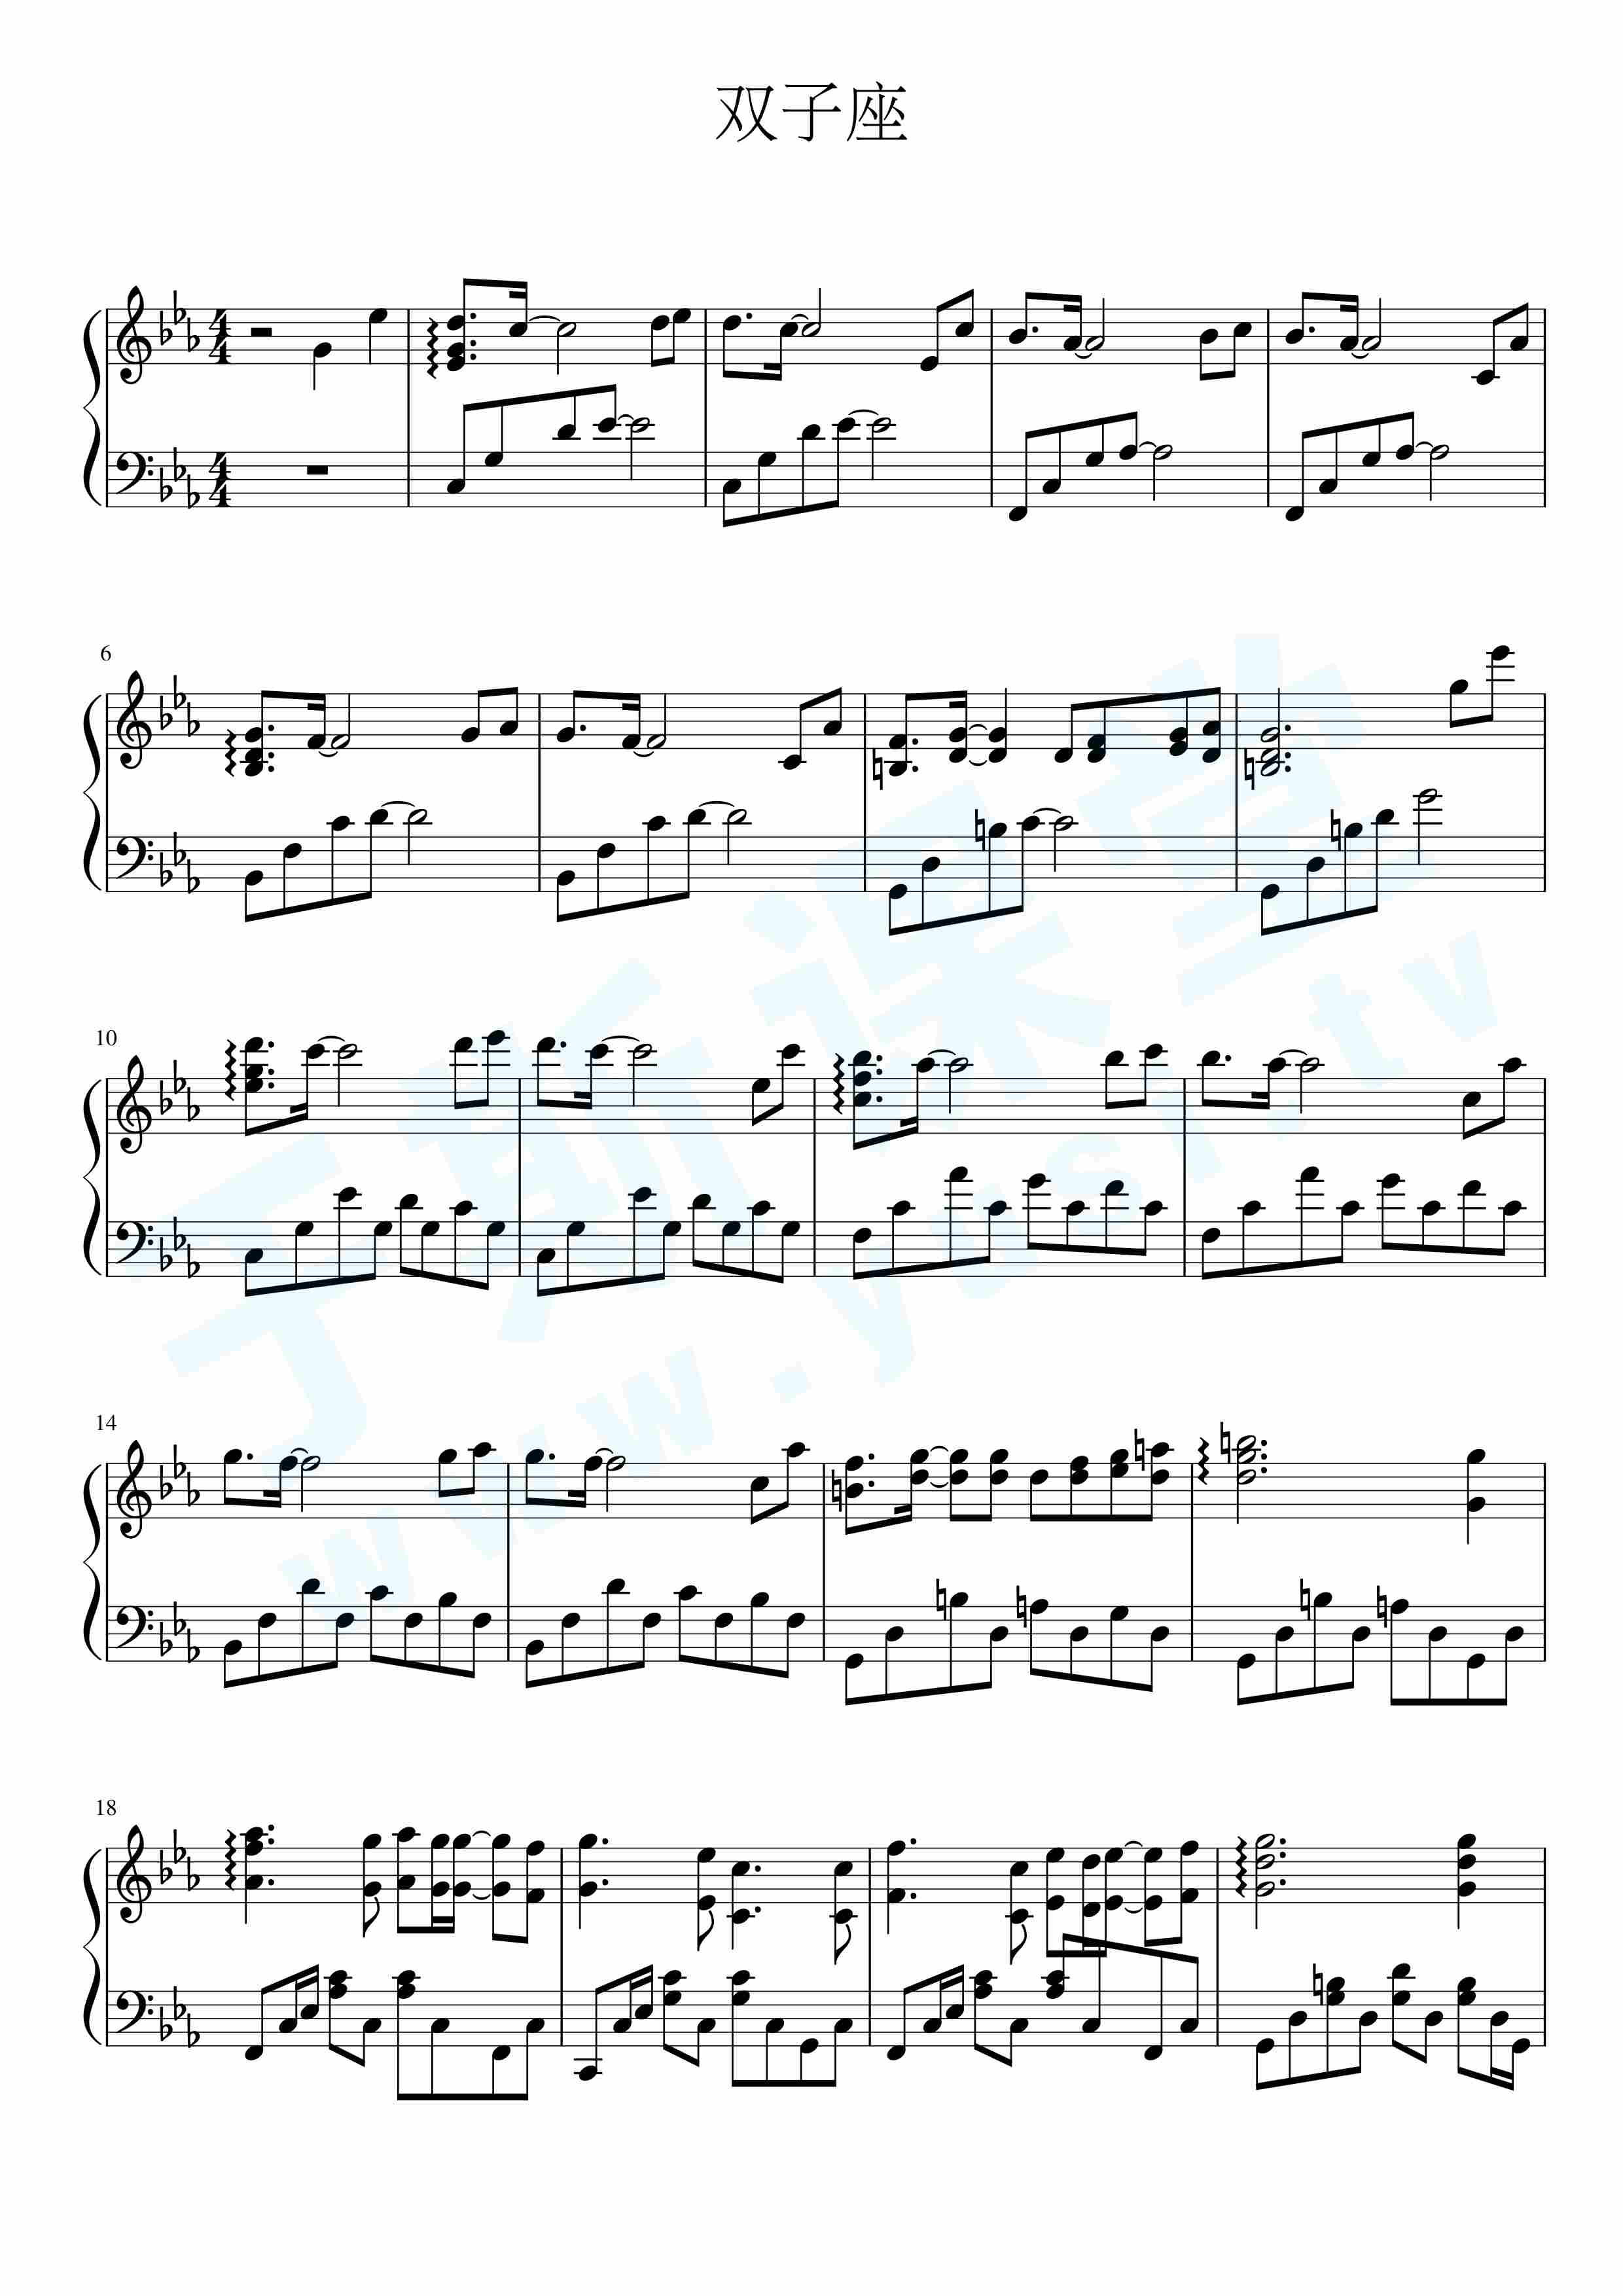 双子座钢琴曲谱，于斯课堂精心出品。于斯曲谱大全，钢琴谱，简谱，五线谱尽在其中。